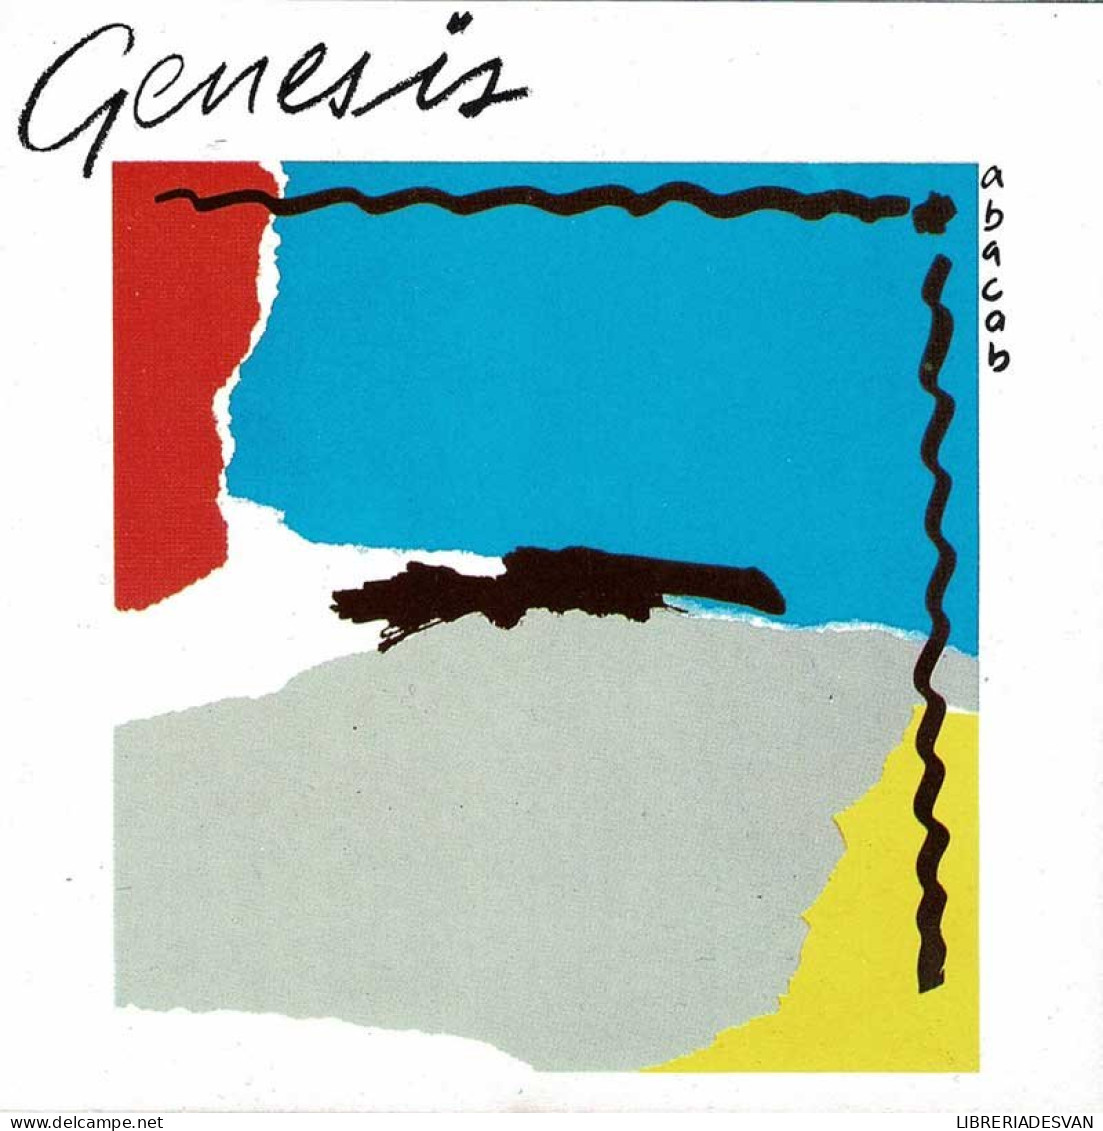 Genesis - Abacab. CD - Rock